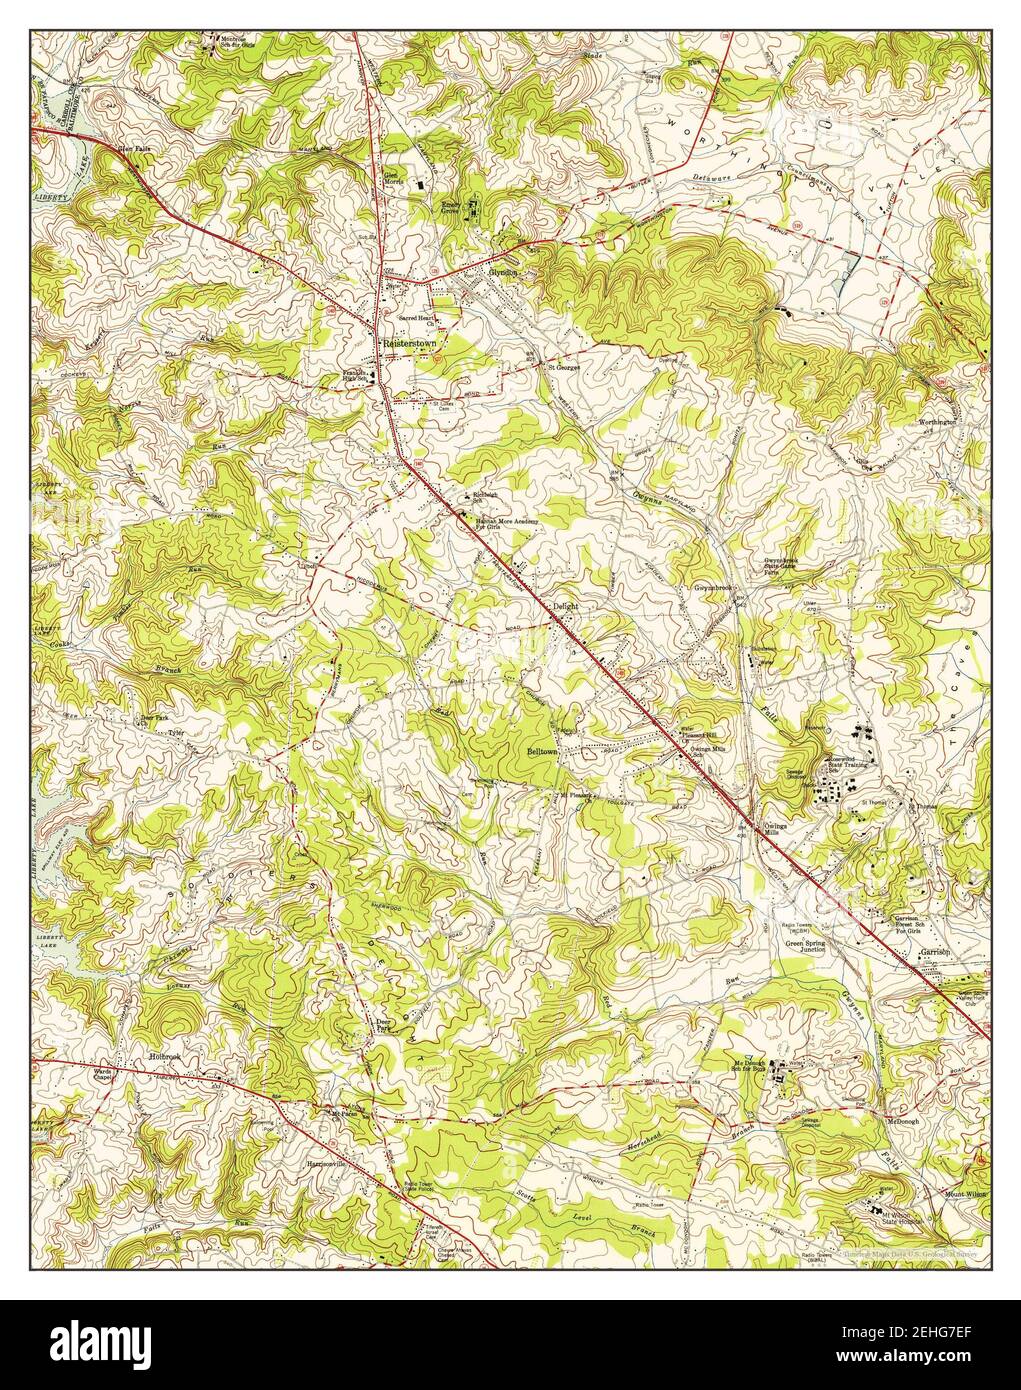 Reisterstown, Maryland, Karte 1953, 1:24000, Vereinigte Staaten von Amerika von Timeless Maps, Daten U.S. Geological Survey Stockfoto